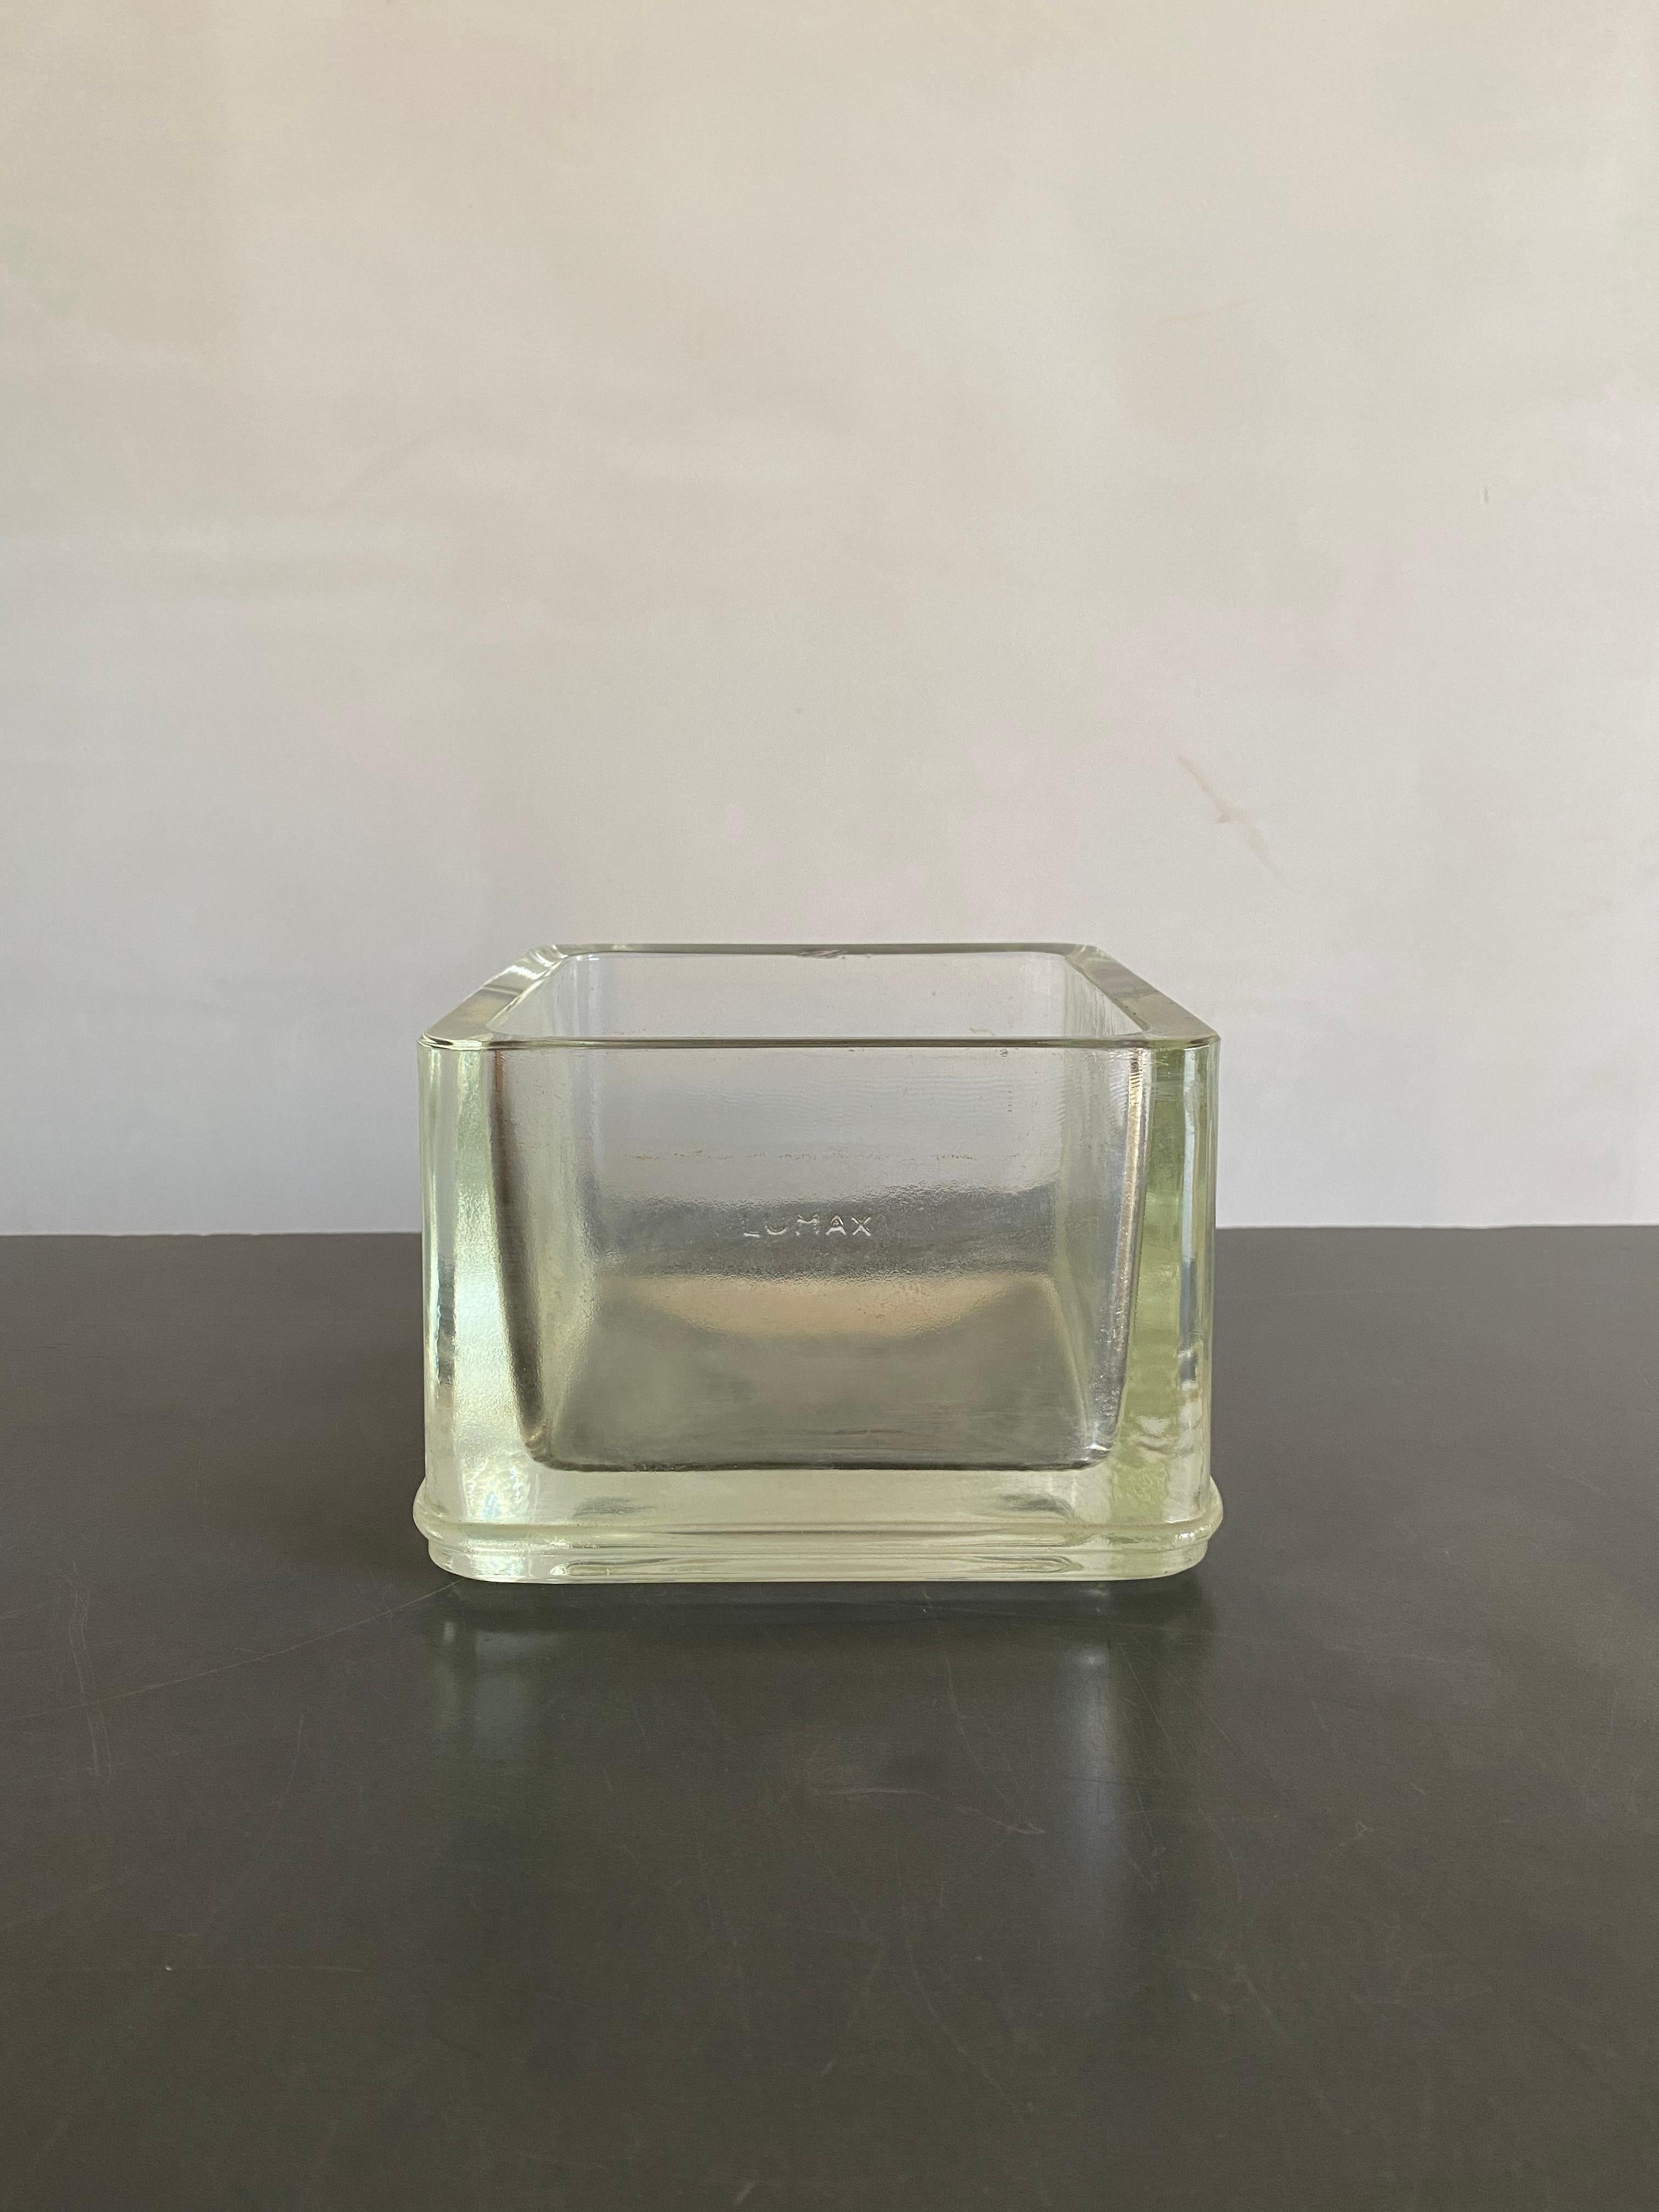 Un grand vide-poche Lumax en verre moulé conçu par Le Corbusier. Signé 'LUMAX'.

Usure conforme à l'âge et à l'utilisation.